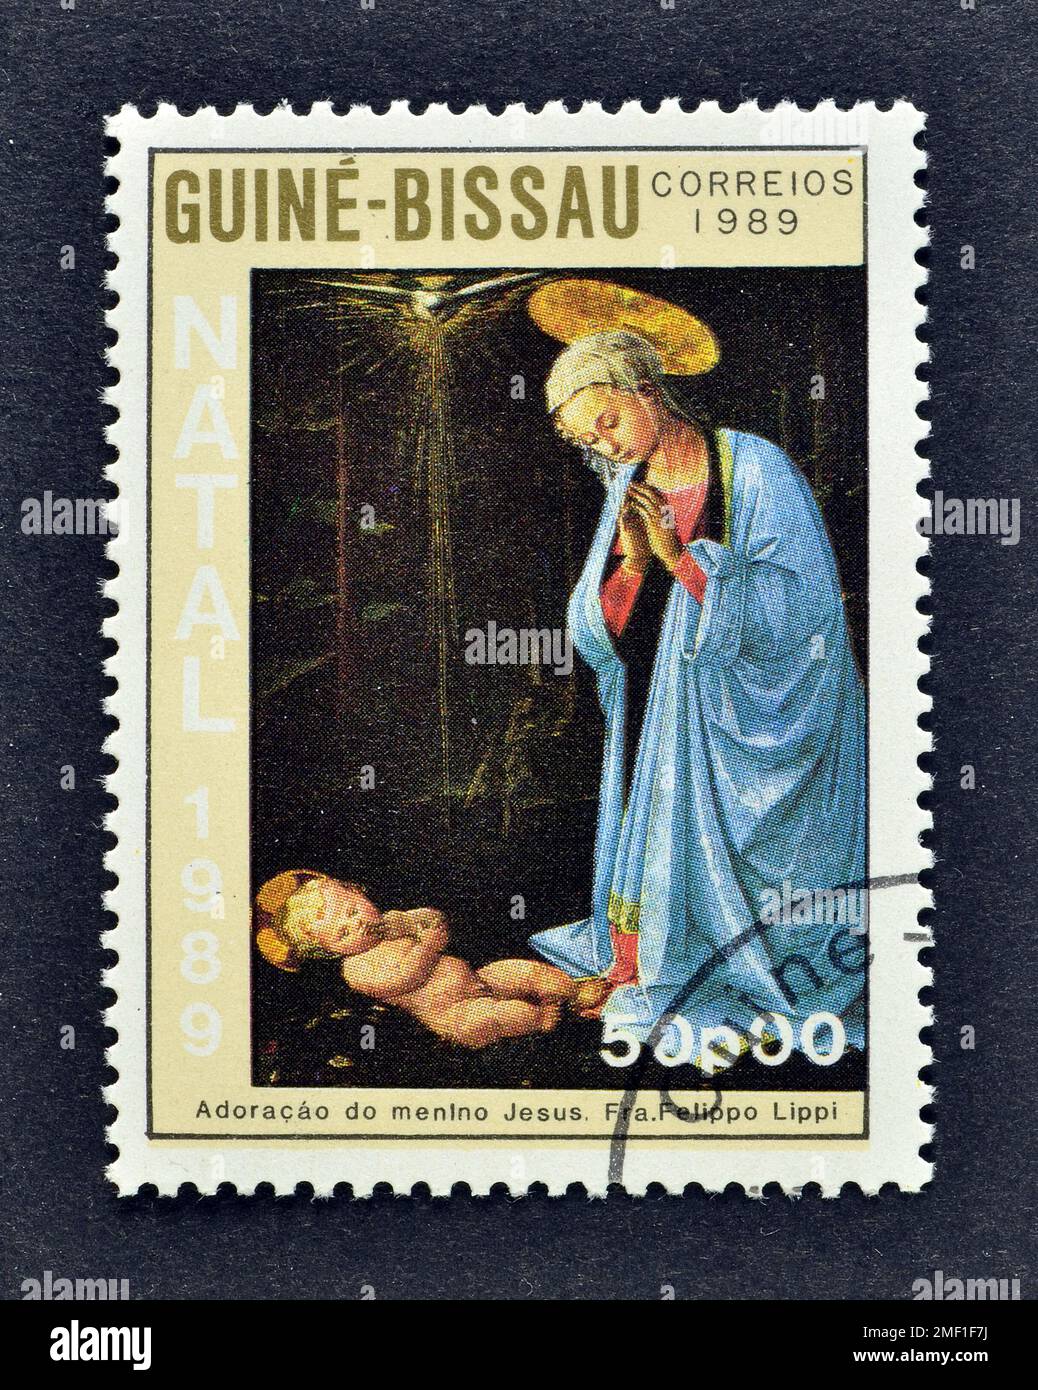 Timbre-poste annulé imprimé par la Guinée-Bissau, qui montre la peinture de FRA Filippo Lippi, Noël 1989, vers 1989. Banque D'Images